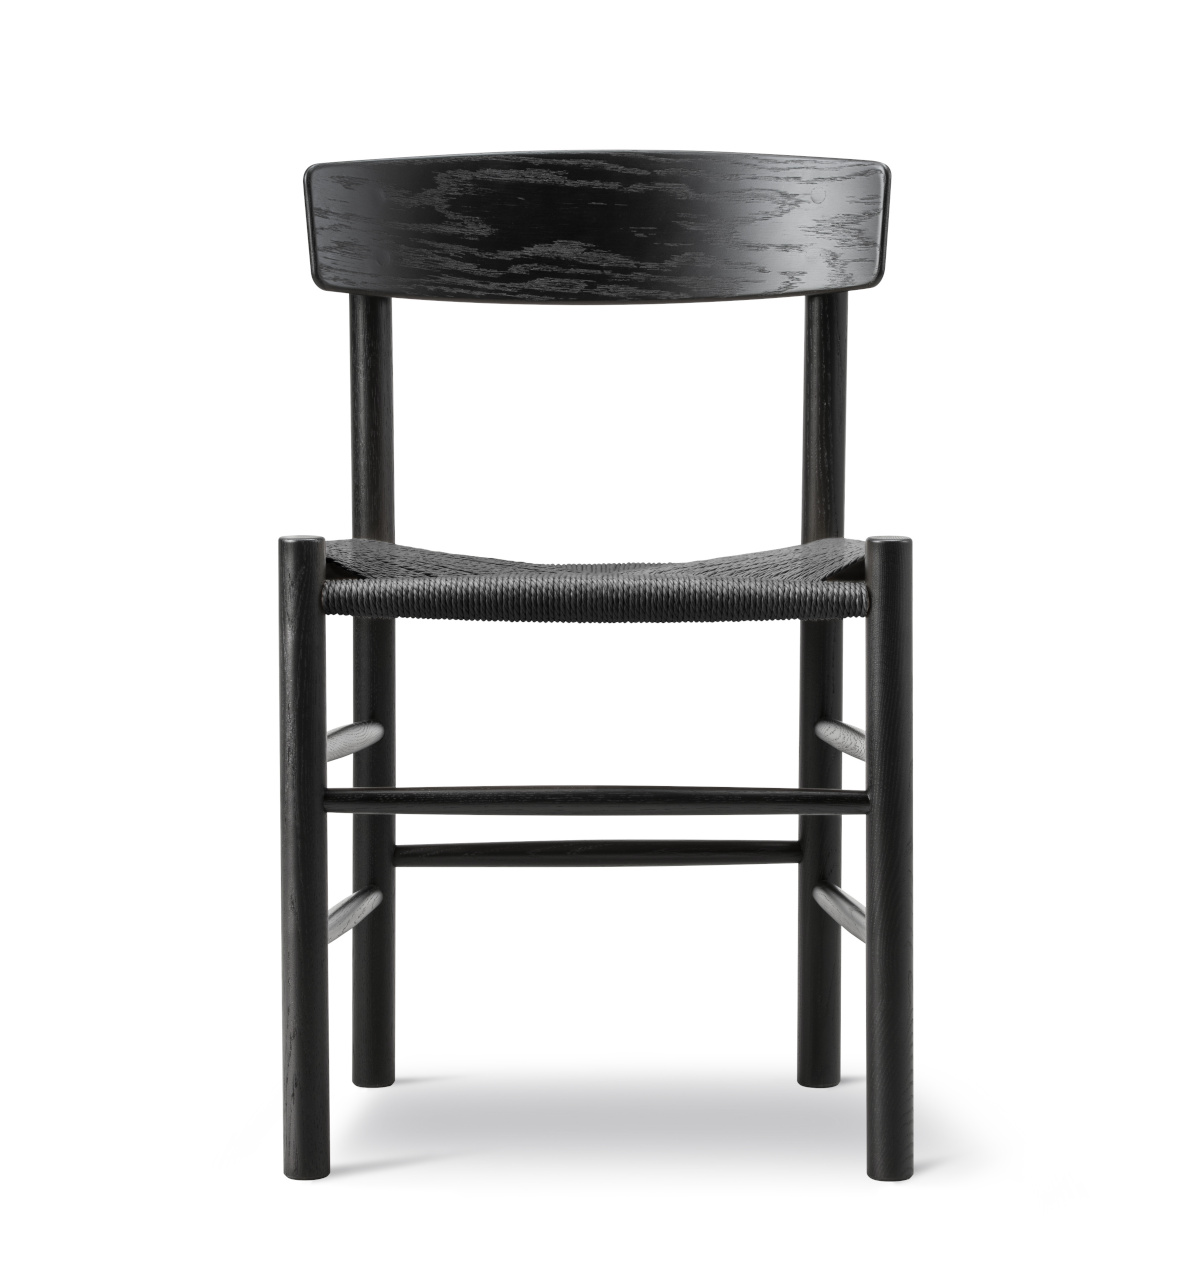 J39 Mogensen Stuhl, eiche schwarz lackiert / sitz schnurgefecht schwarz